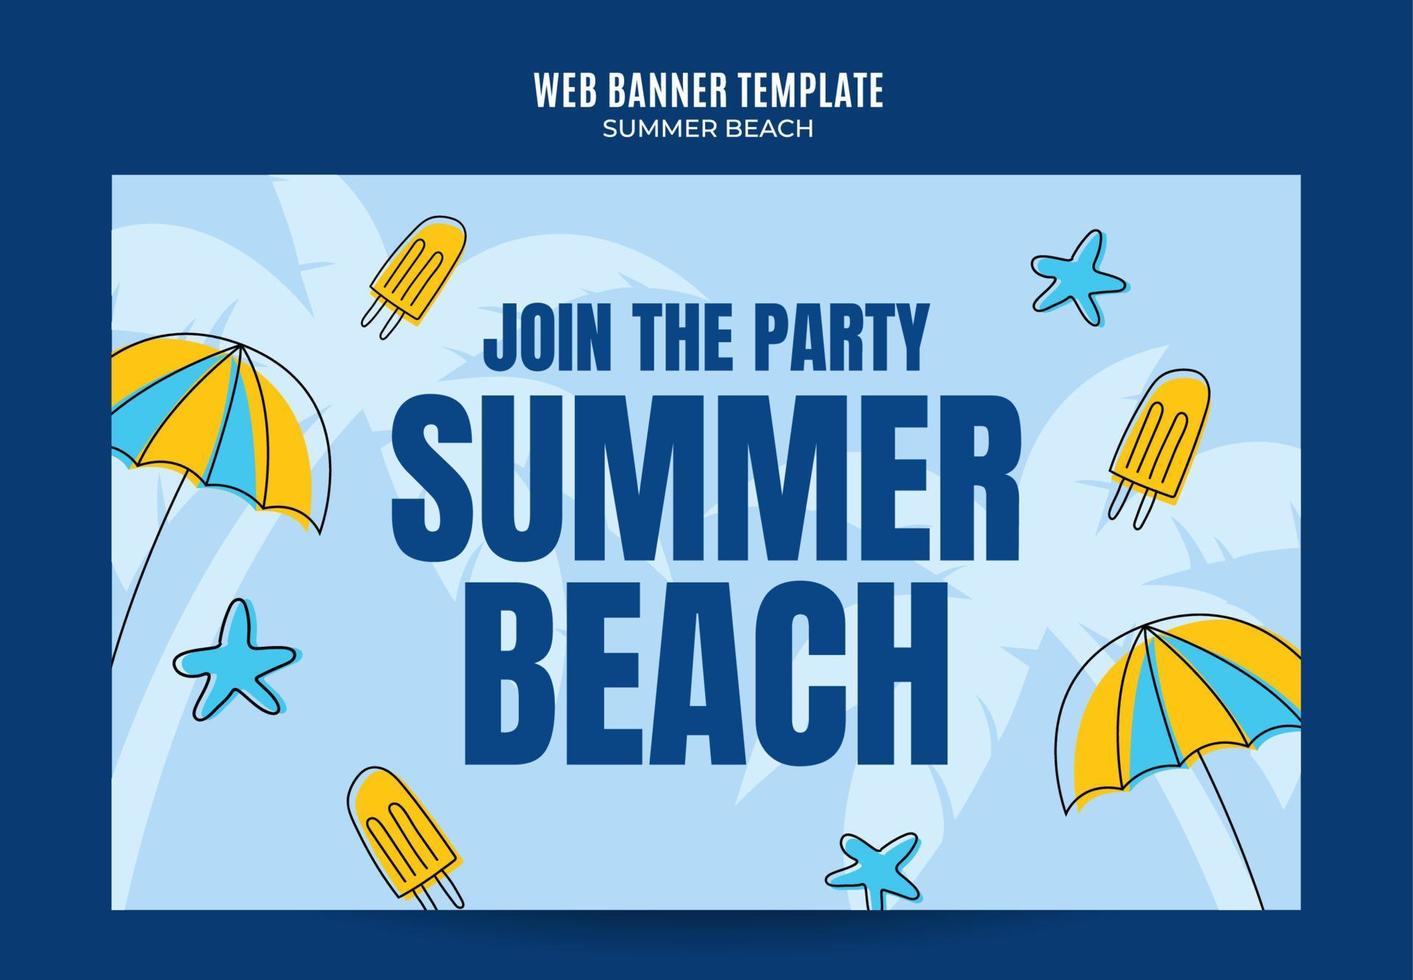 giorno d'estate - banner web per feste in spiaggia per poster di social media, banner, area spaziale e sfondo vettore